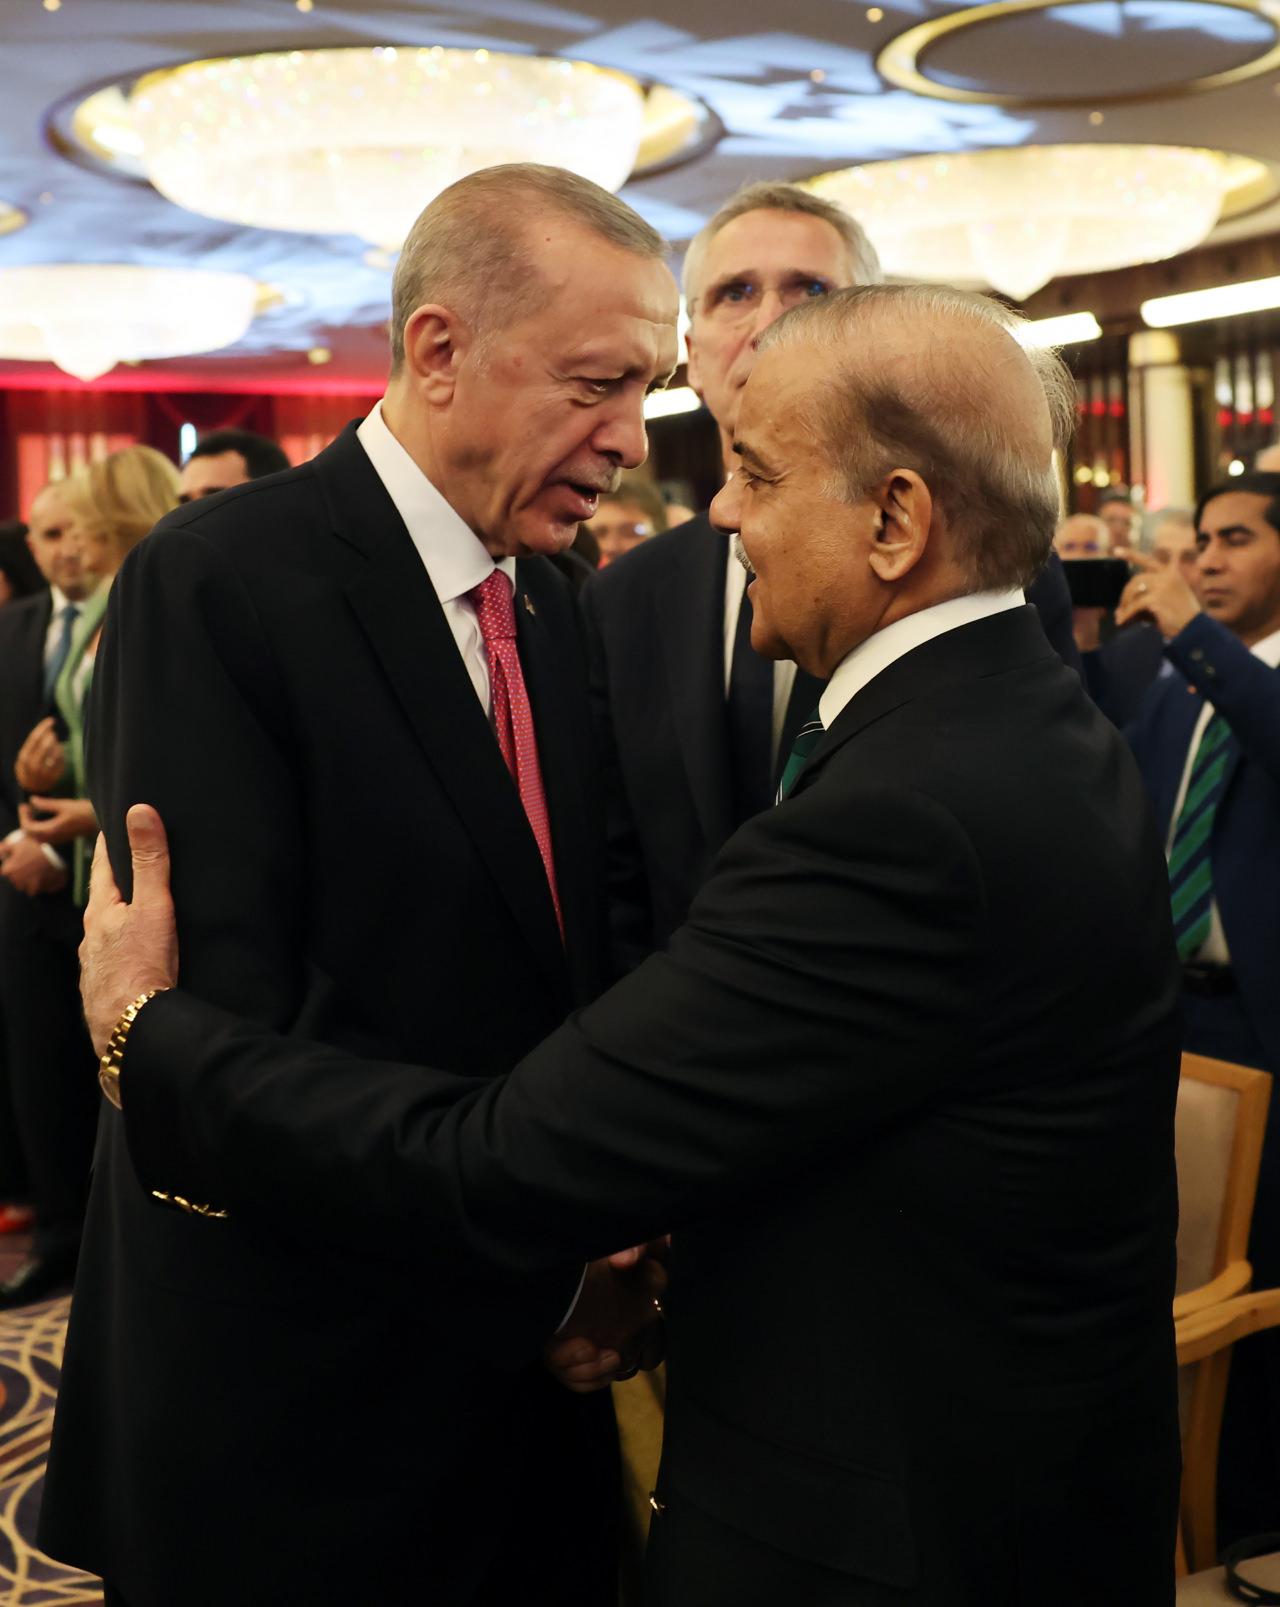 Cumhurbaşkanı Recep Tayyip Erdoğan, Cumhurbaşkanlığı Külliyesi'nde gerçekleştirilen Göreve Başlama Töreni'nde Pakistan Başbakanı Şahbaz Şerif ile böyle selamlaştı.